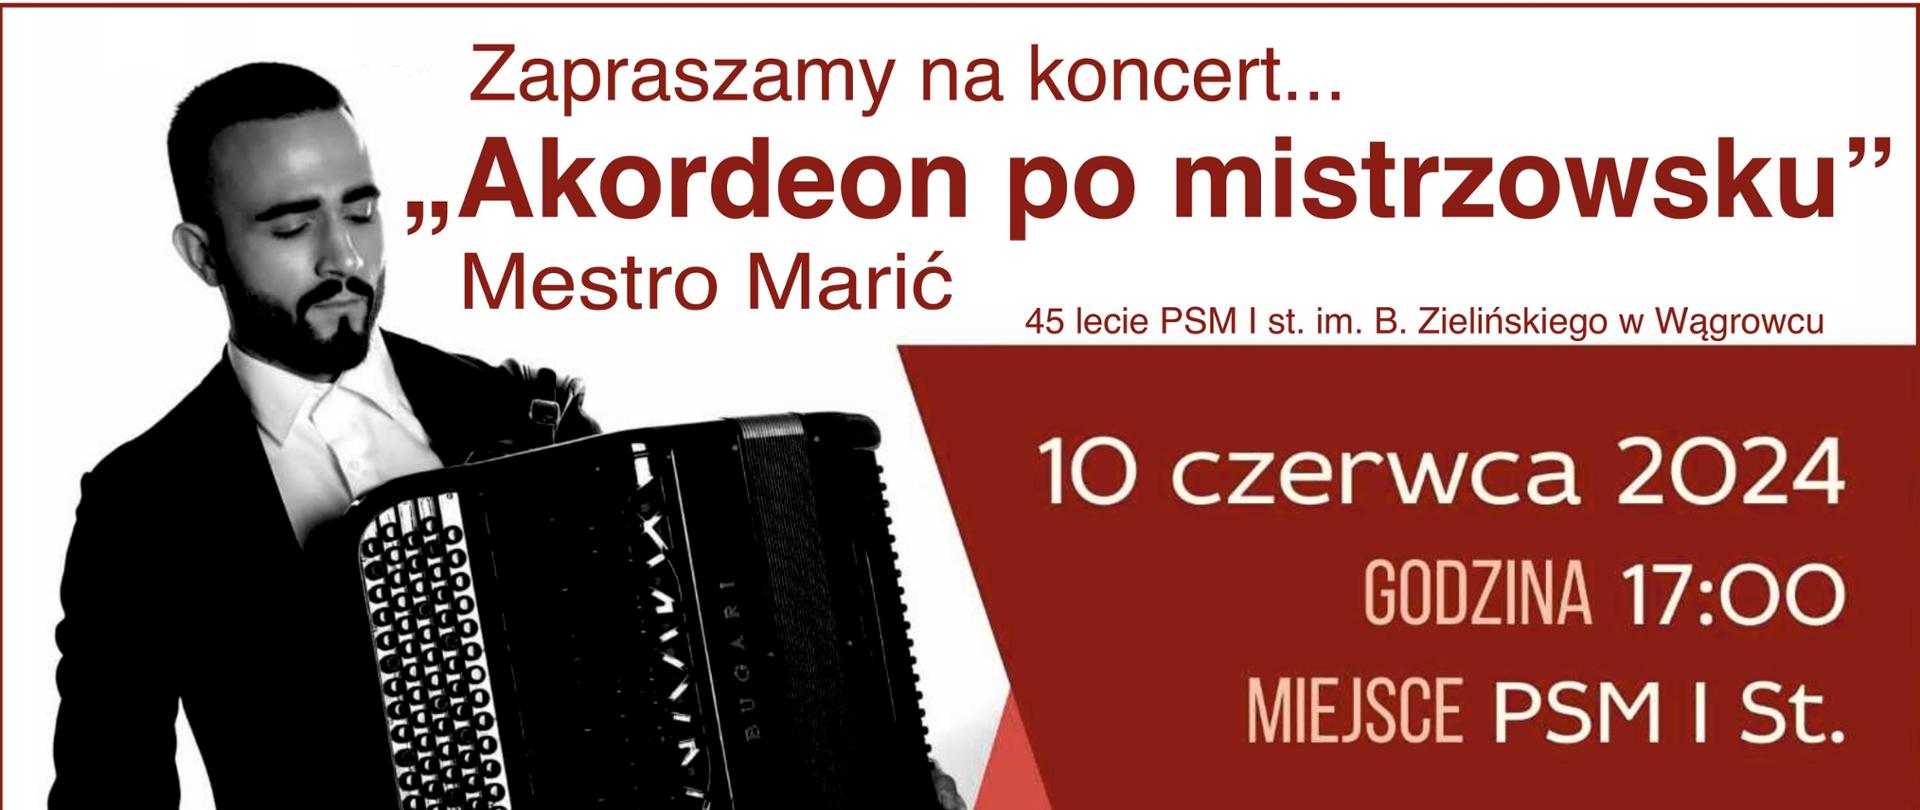 Na banerze reklamowym znajdują się informacje dotyczące koncertu w wykonaniu akordeonisty Petera Marica w dniu 10 czerwca 2024r. w PSM I st. i,m. B Zielińskiego w Wągrowcu